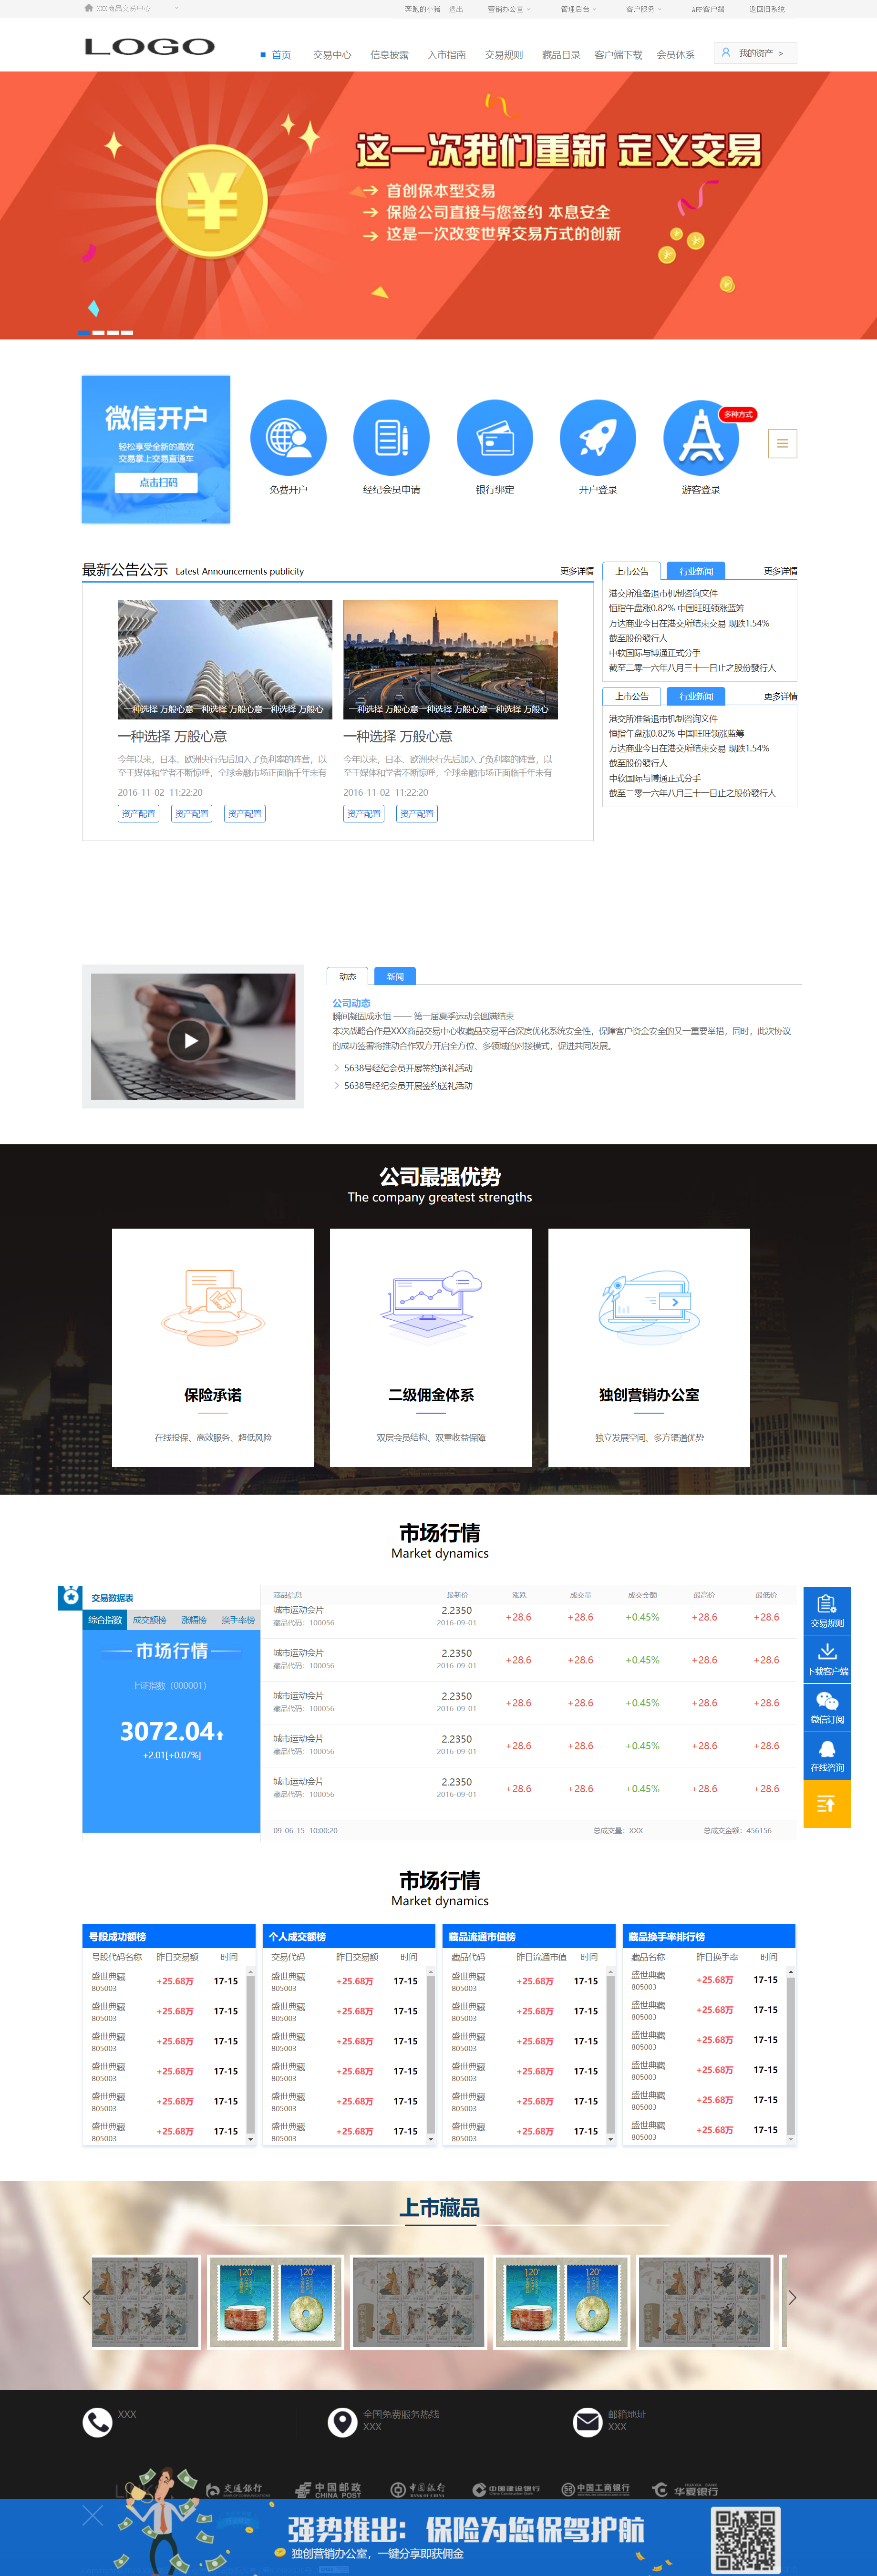 蓝色简洁风格响应式金融投资企业网站模板